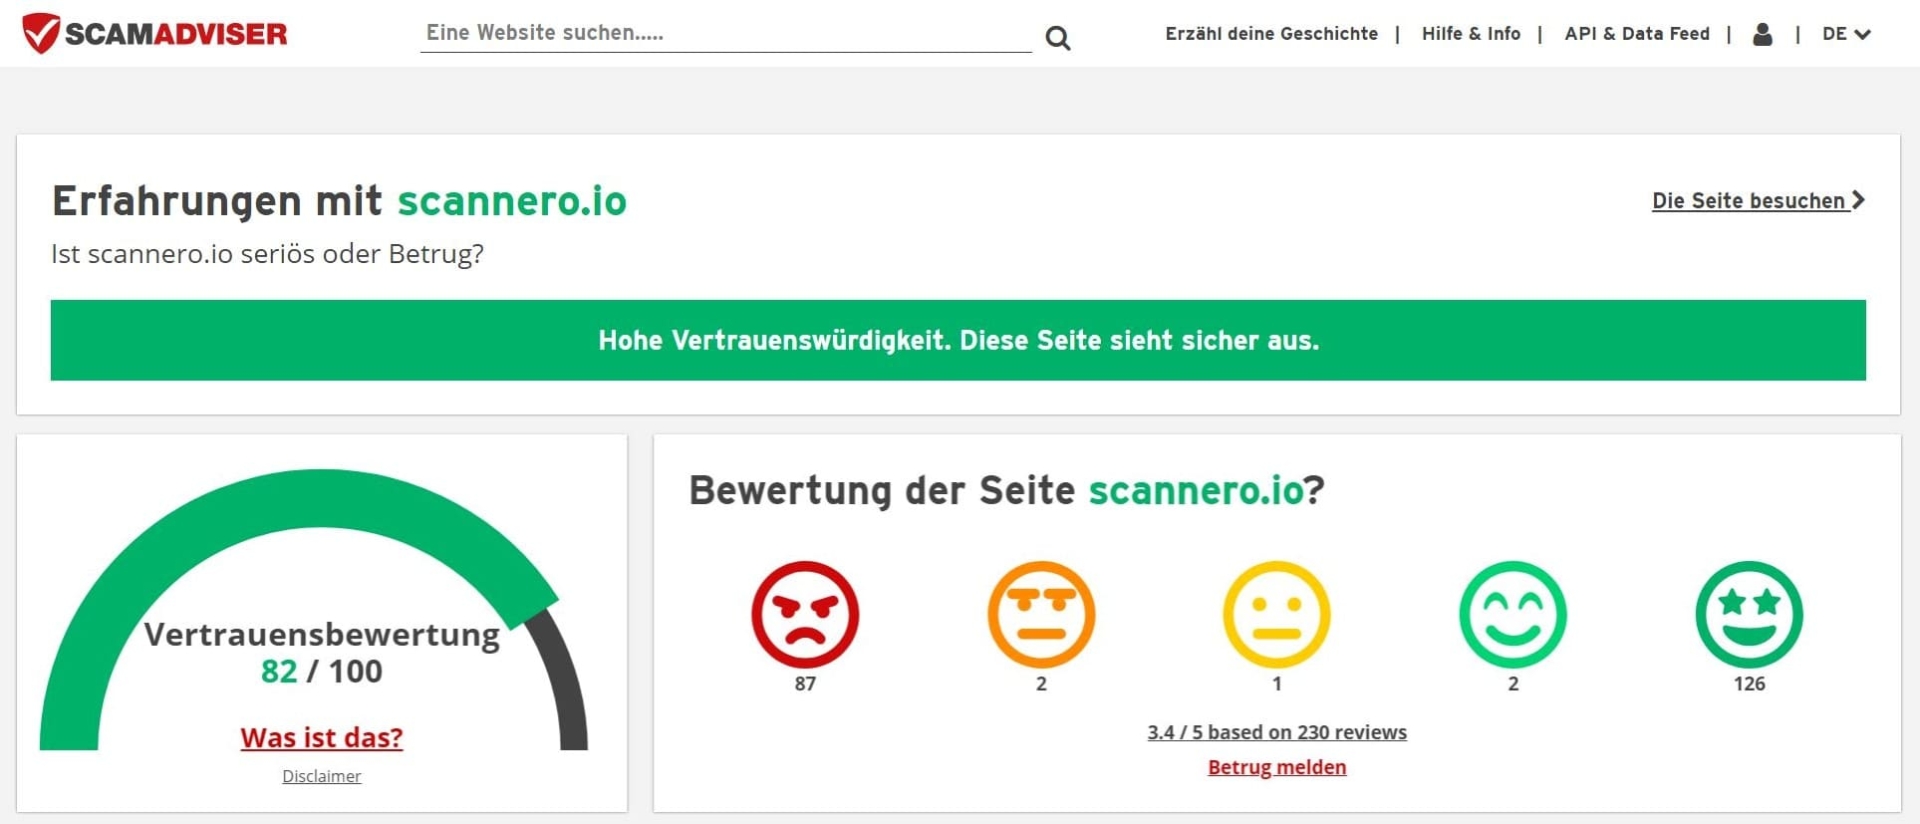 scamadviser Website Trustscore für Scannero